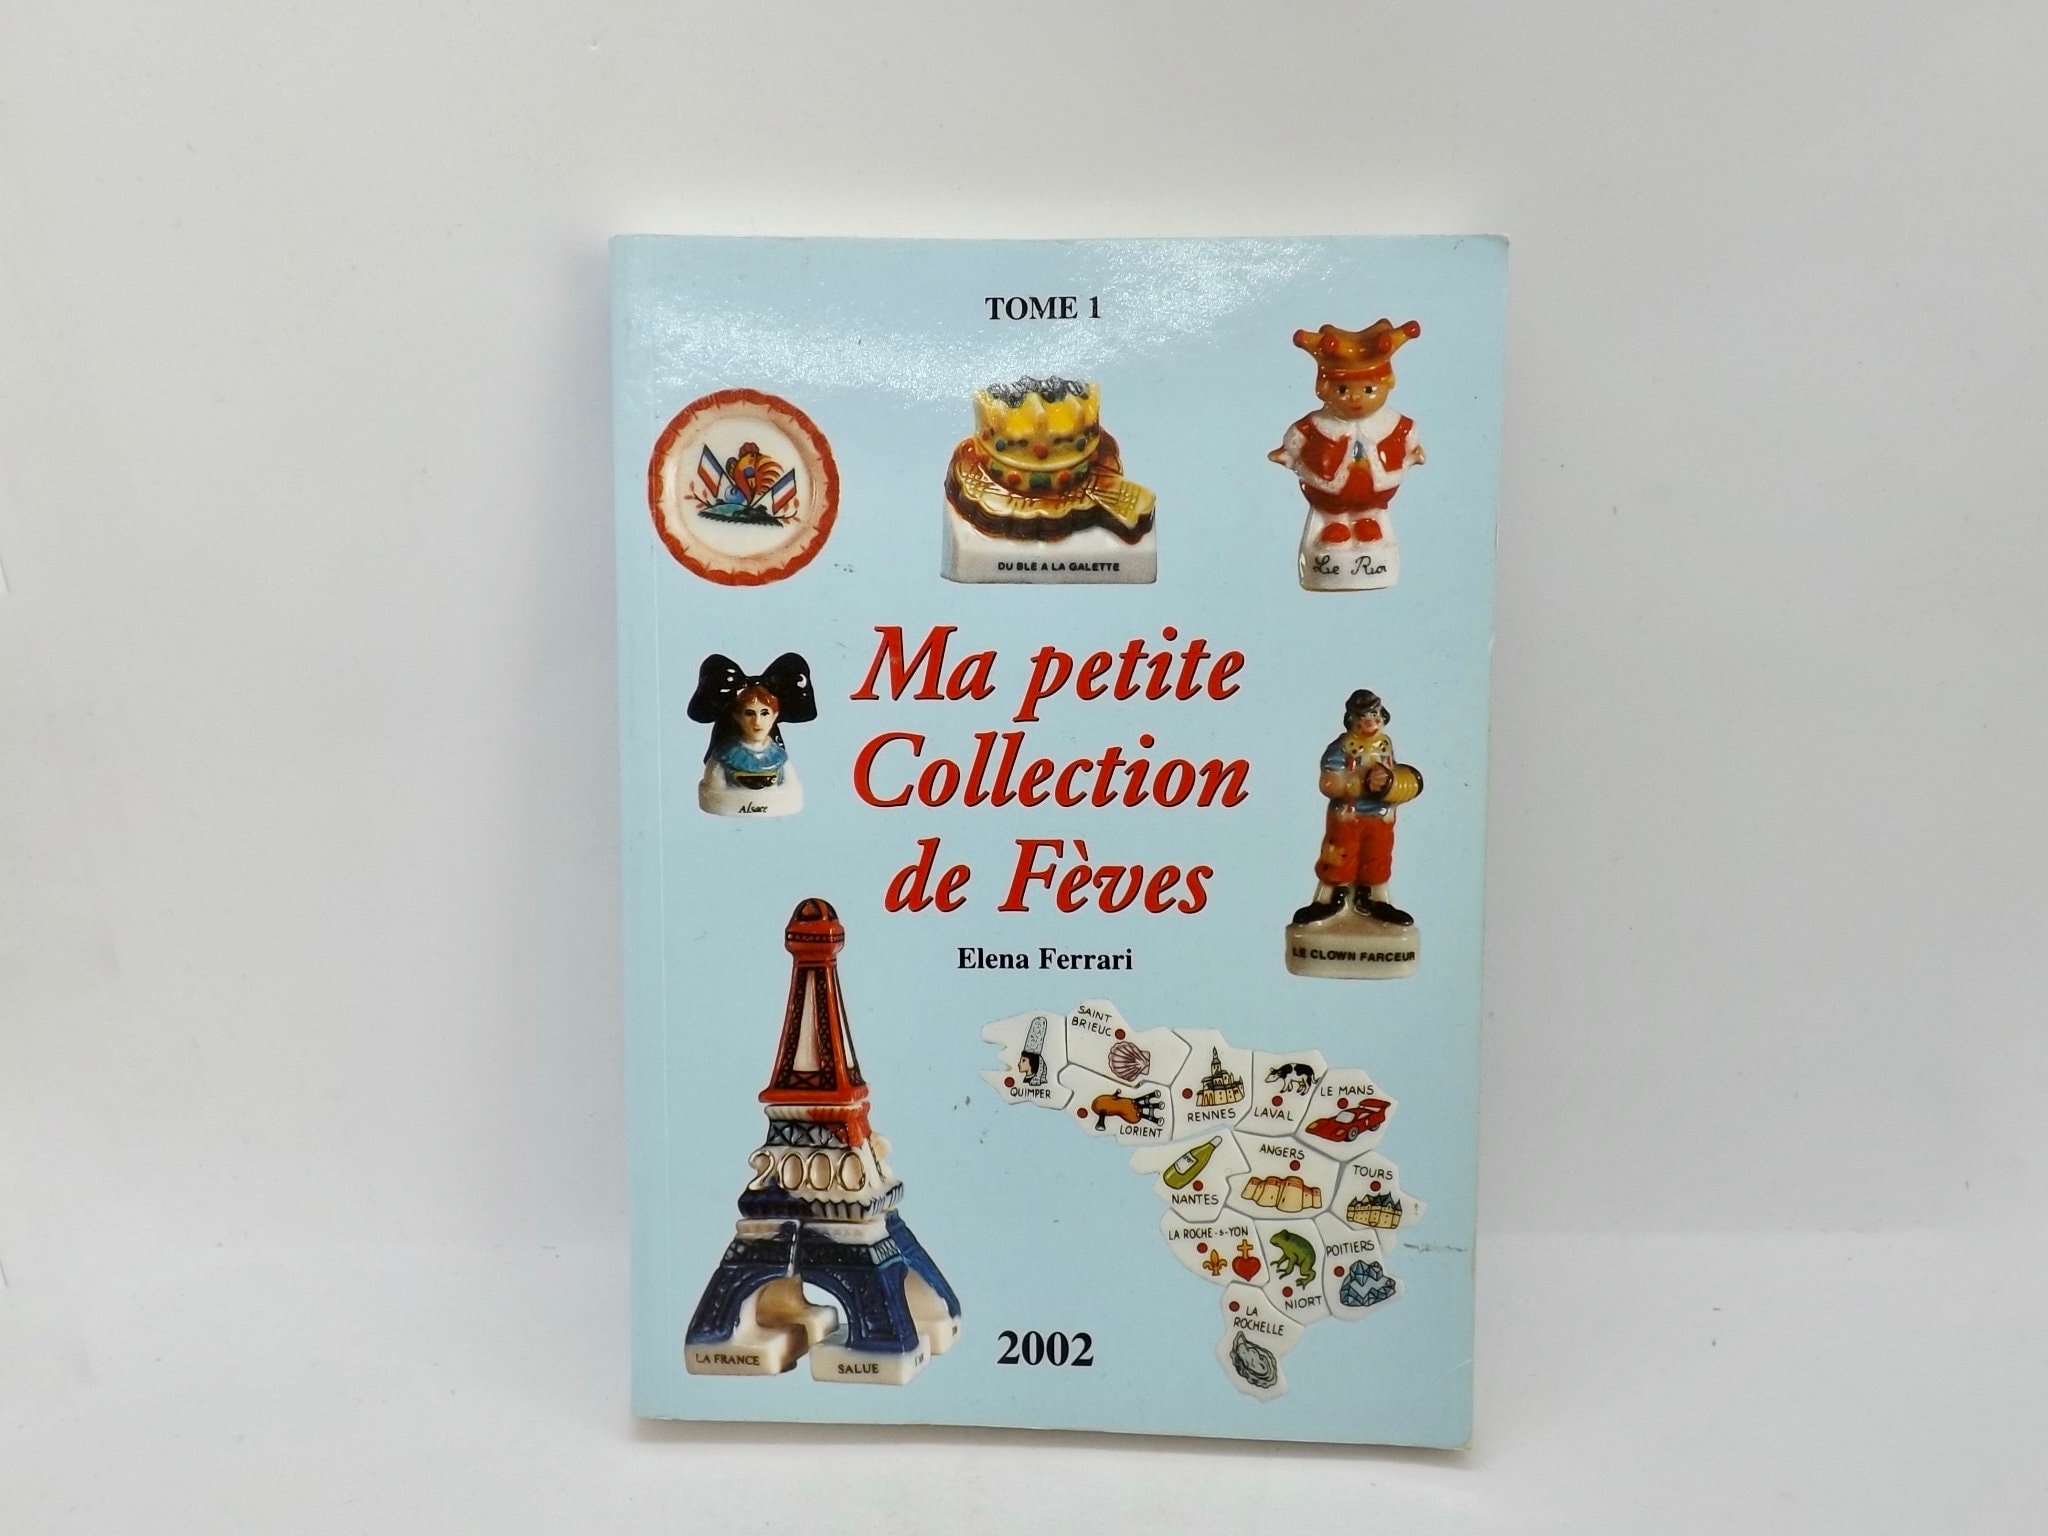 FABOLAND Le Zizi dans Tous Ses Etats DV530 - FÈVES DE Collection